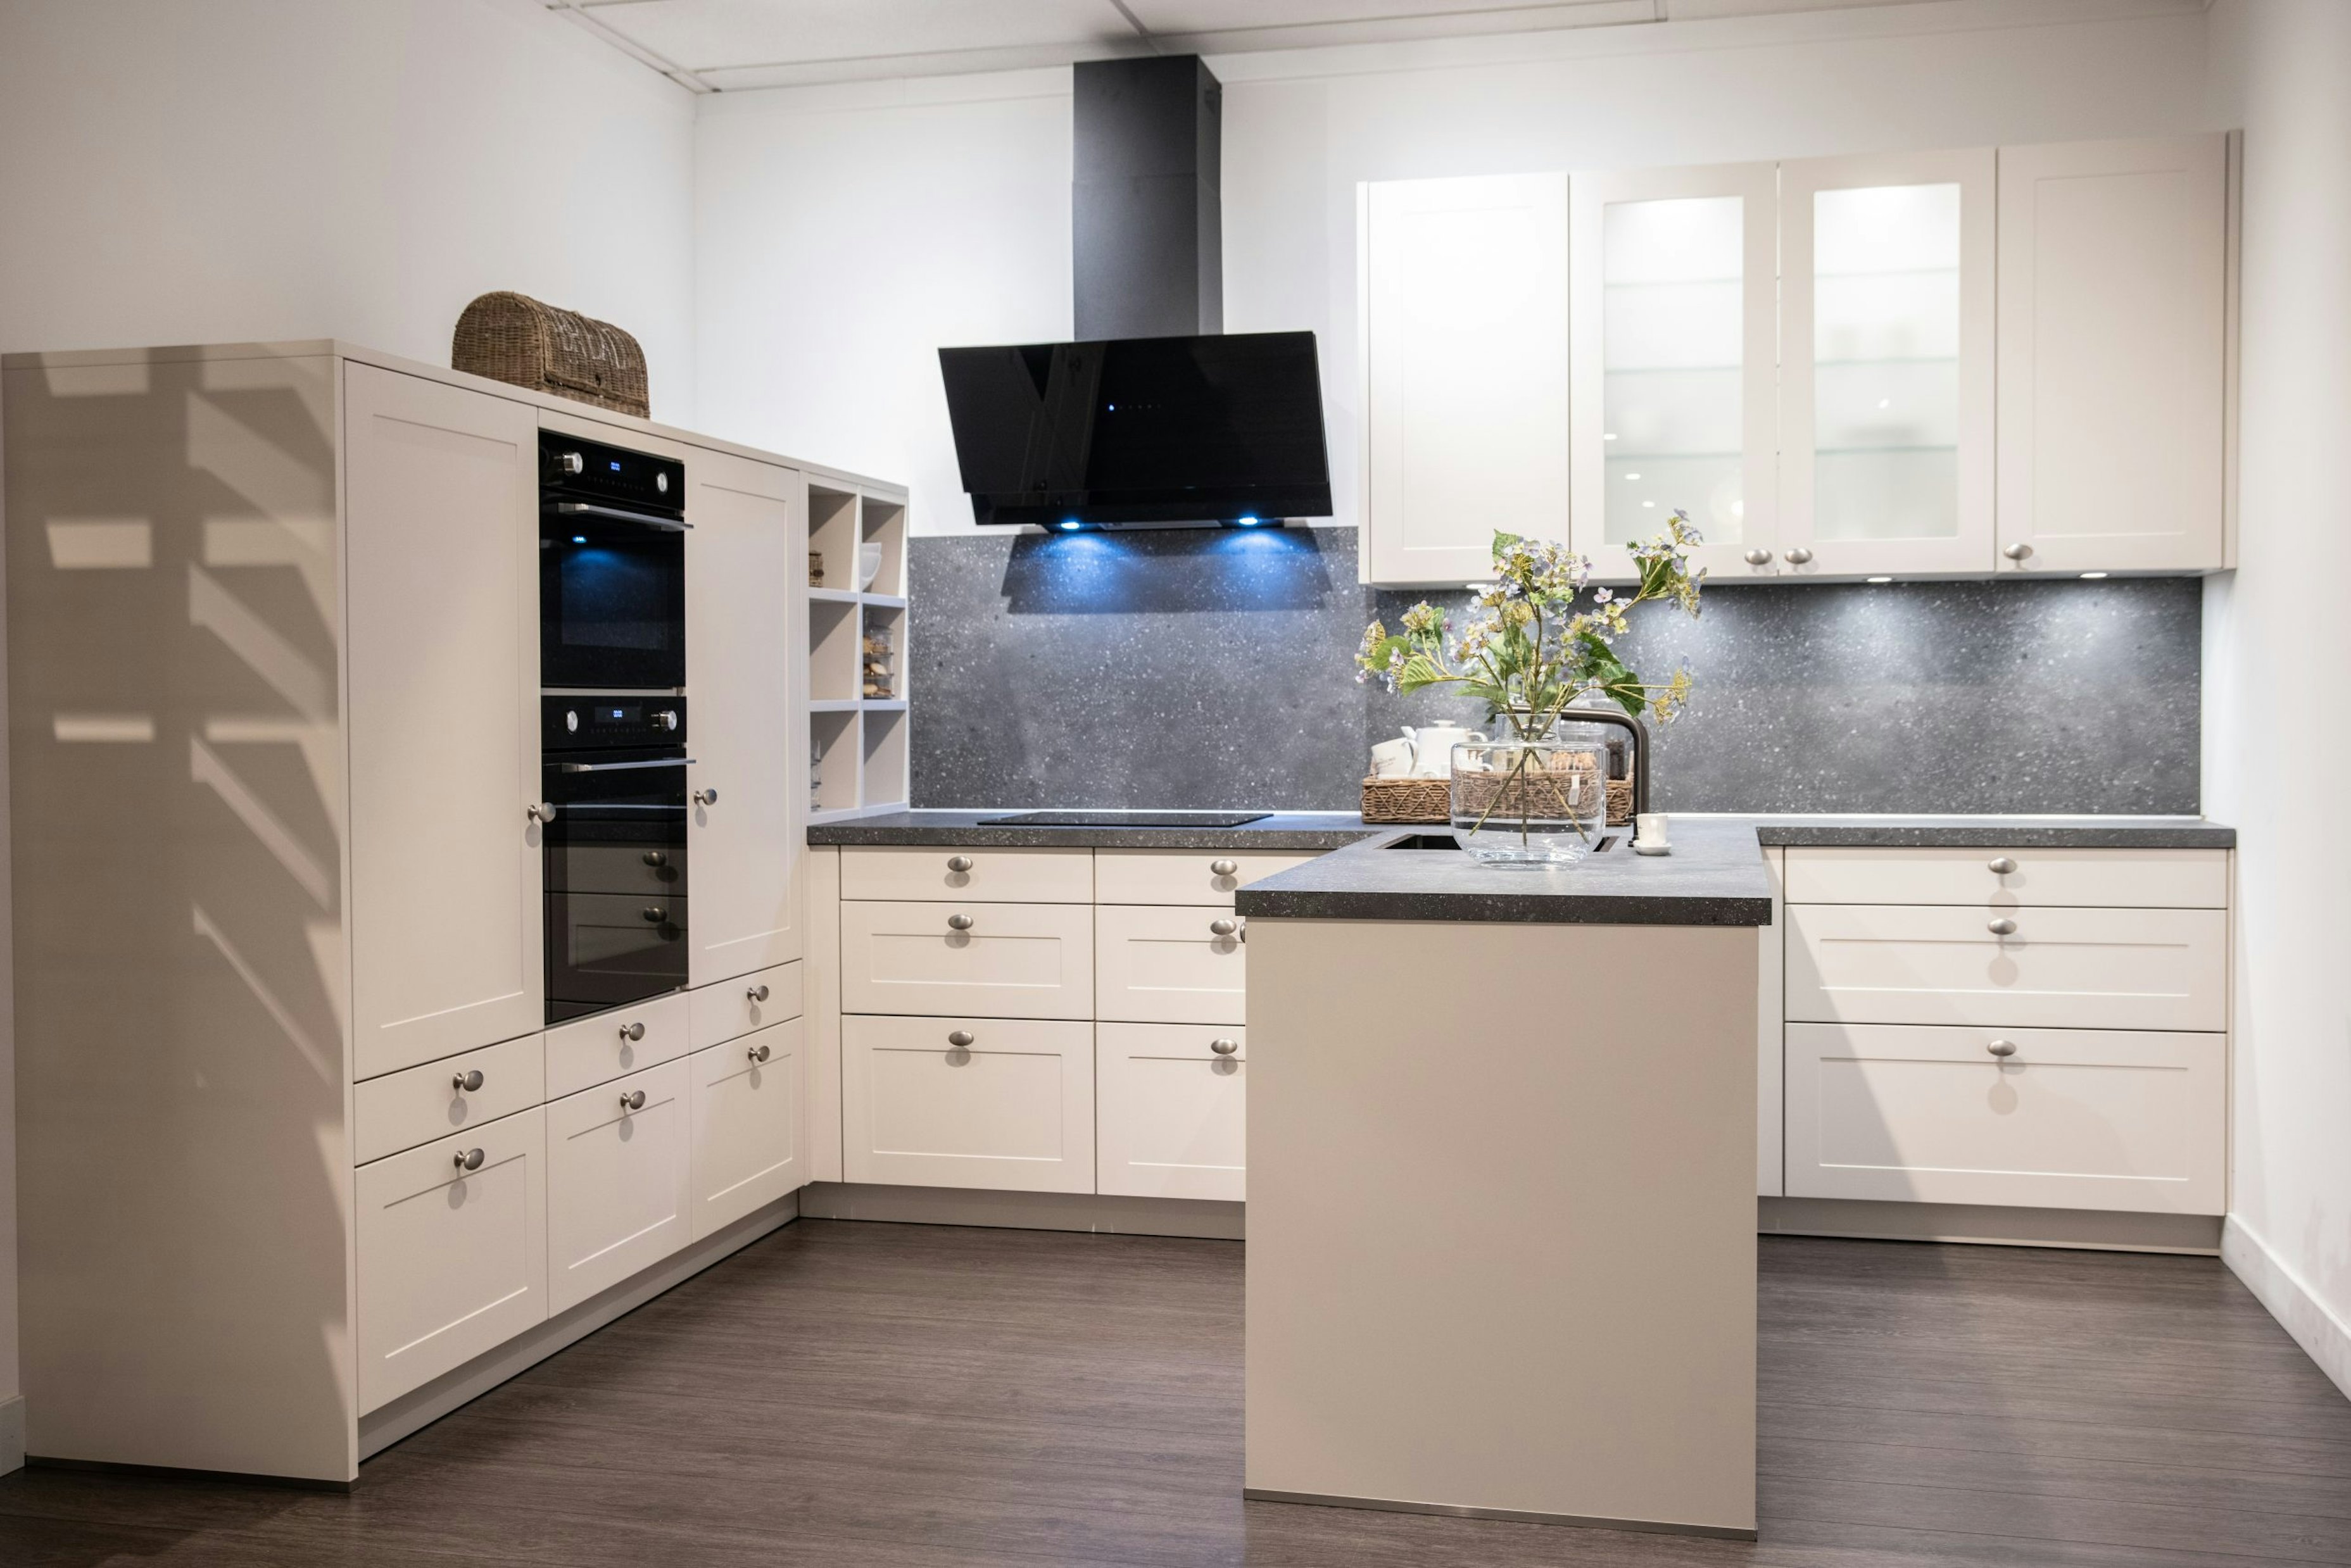 De zwarte inbouwapparatuur en schuine afzuigkap geven deze keuken een modern landelijke look - Bemmel & Kroon keukens